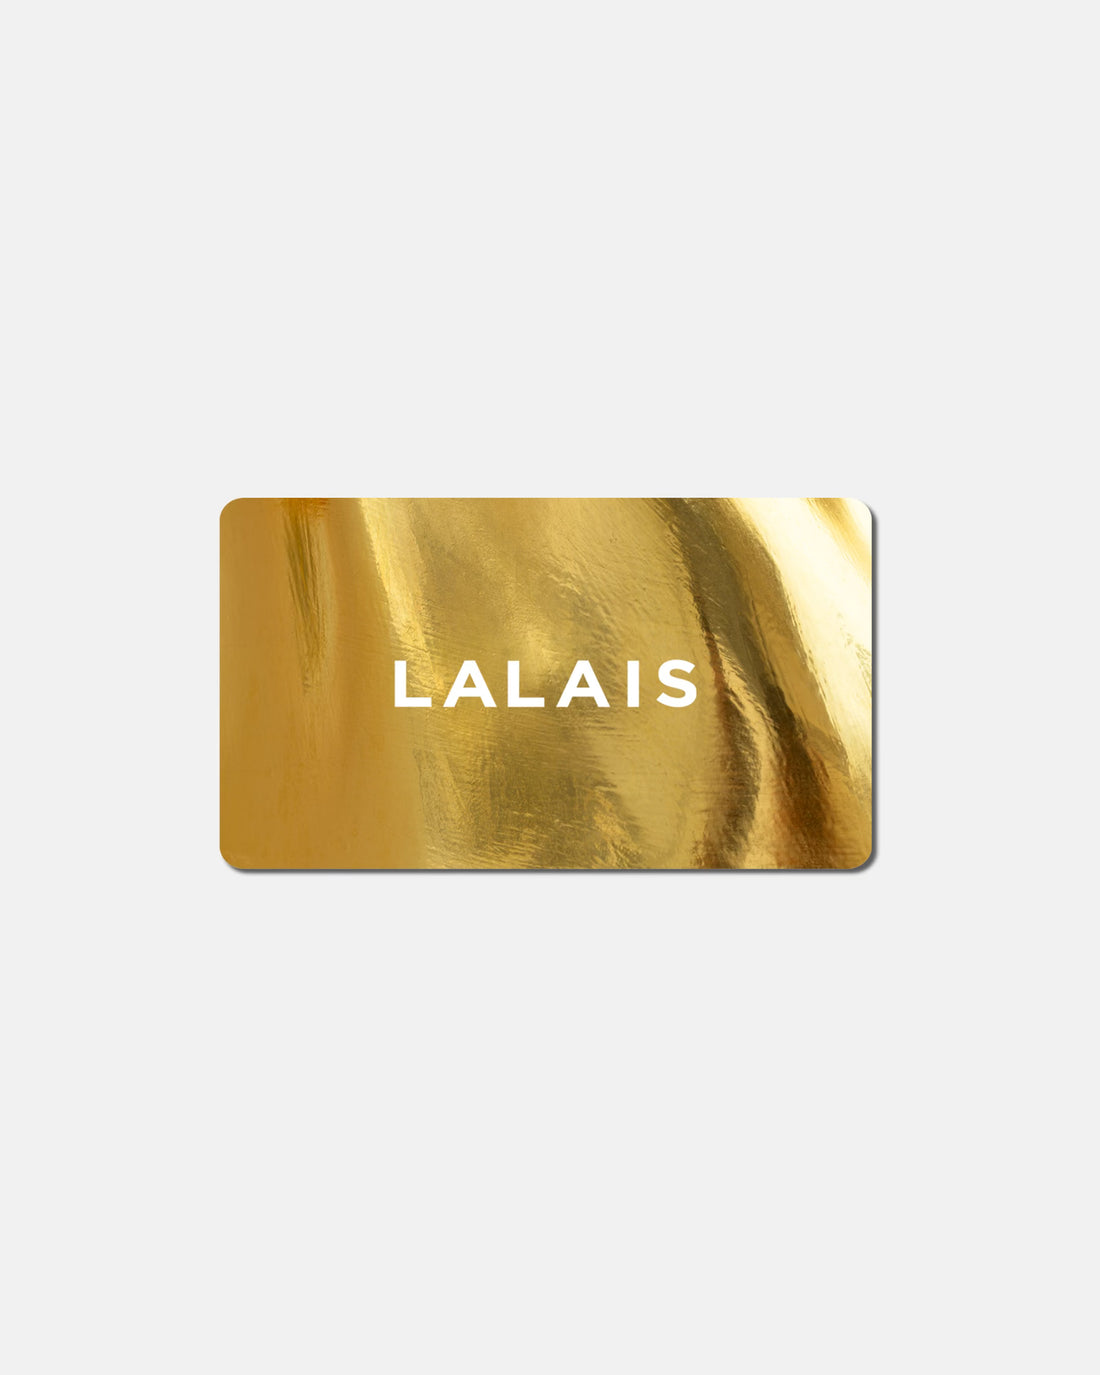 THE LALAIS E-GIFT CARD